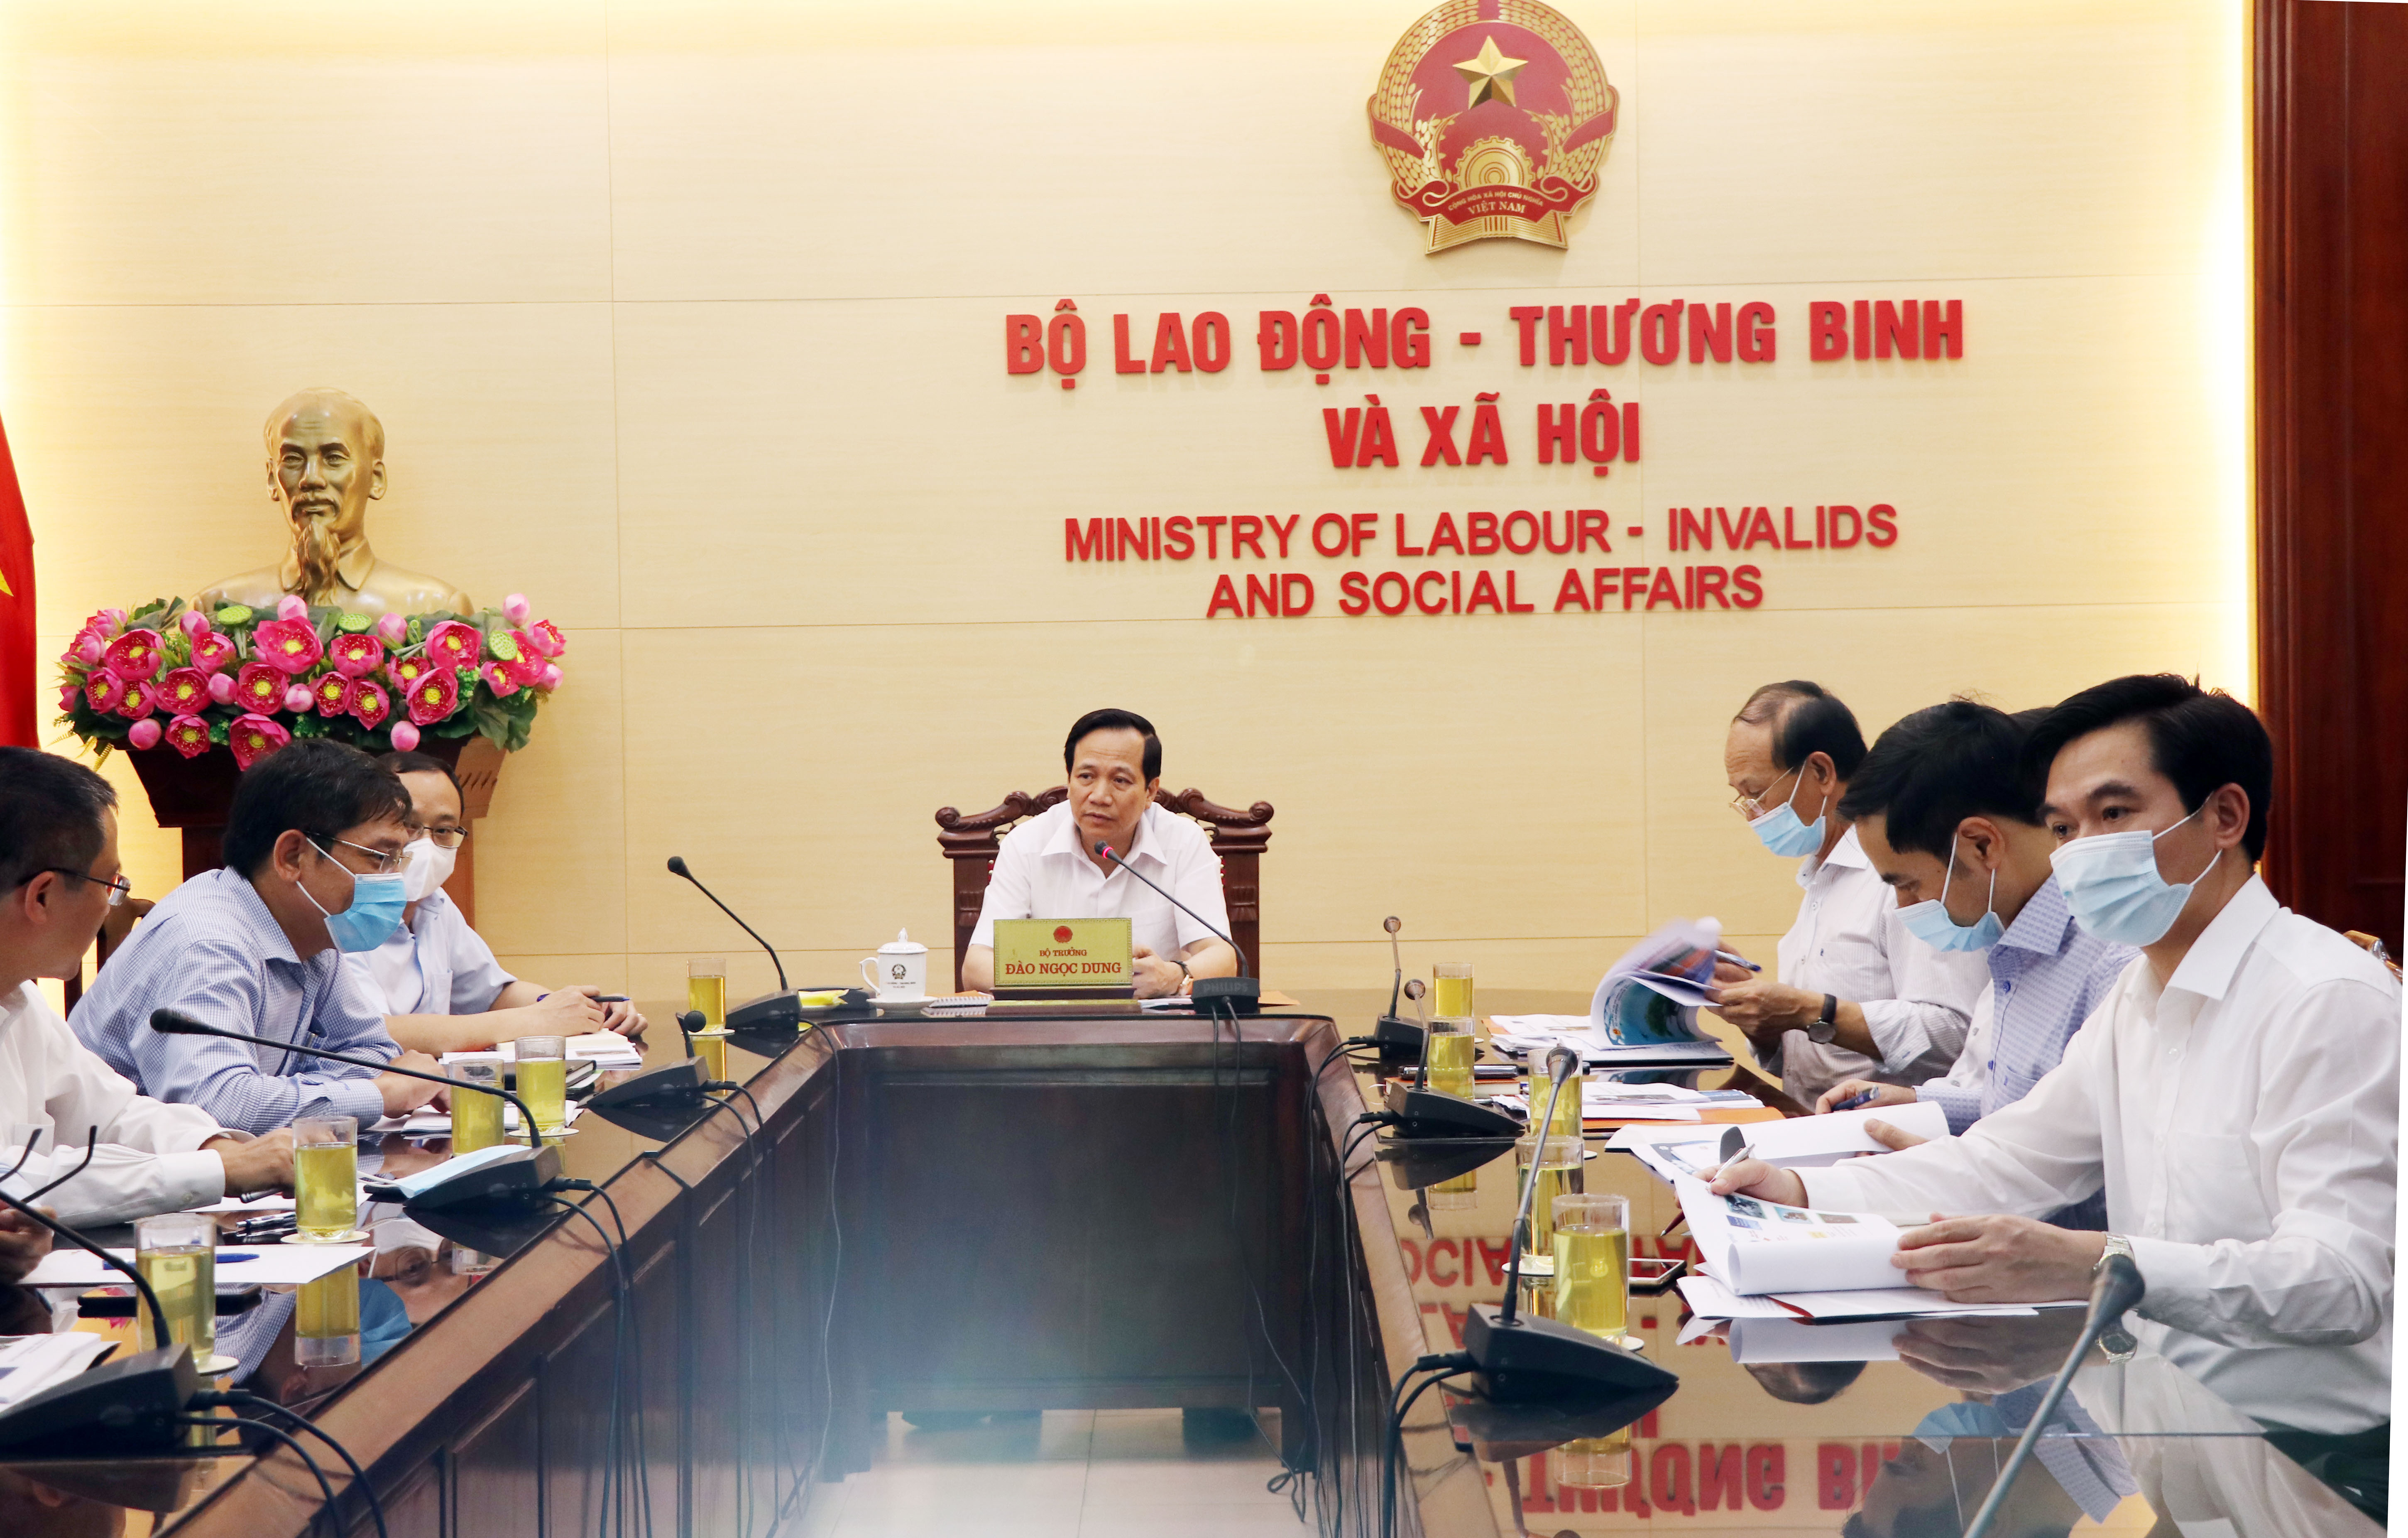 Bộ trưởng Đào Ngọc Dung làm việc với các đơn vị về chuyển đổi số trong lĩnh vực lao động, người có công và xã hội